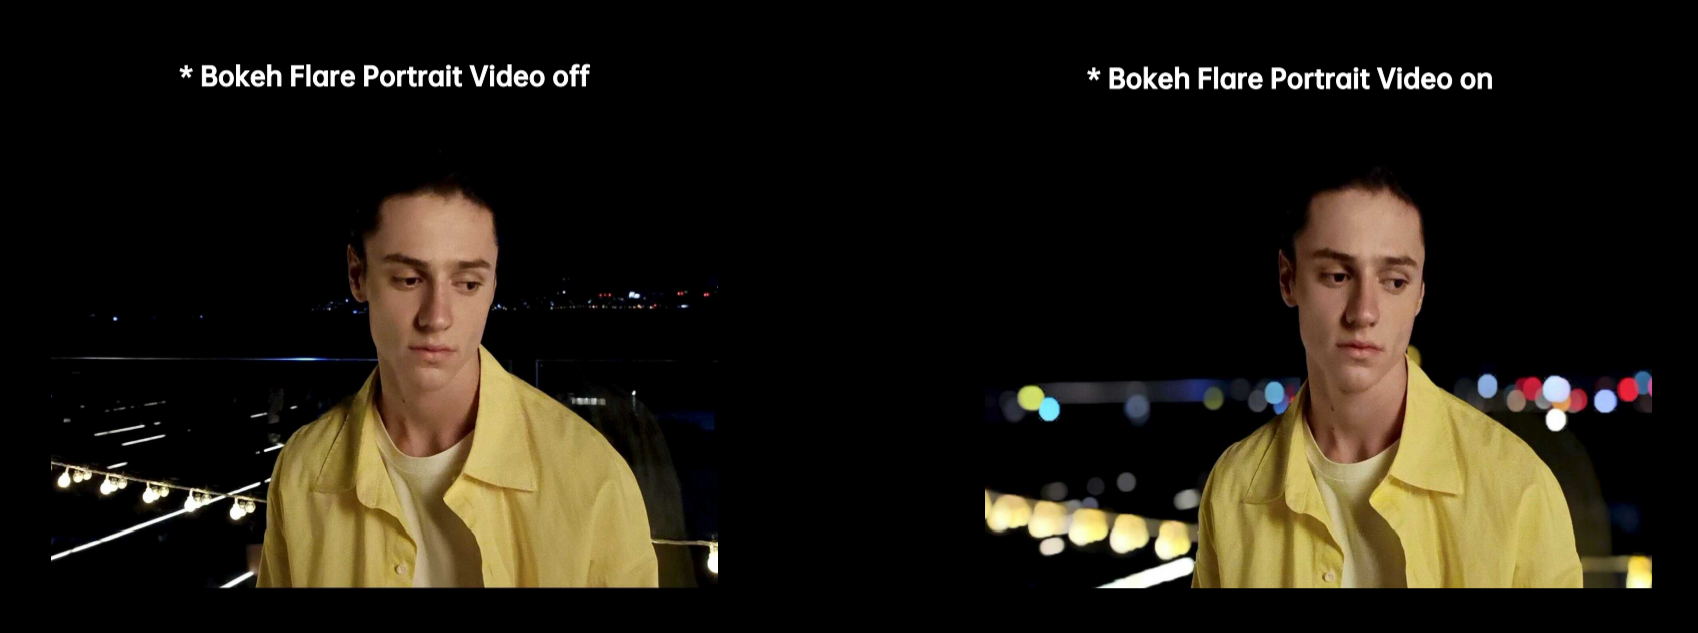 OPPO Reno 6 Series Bokeh Flare Portrait Video 03